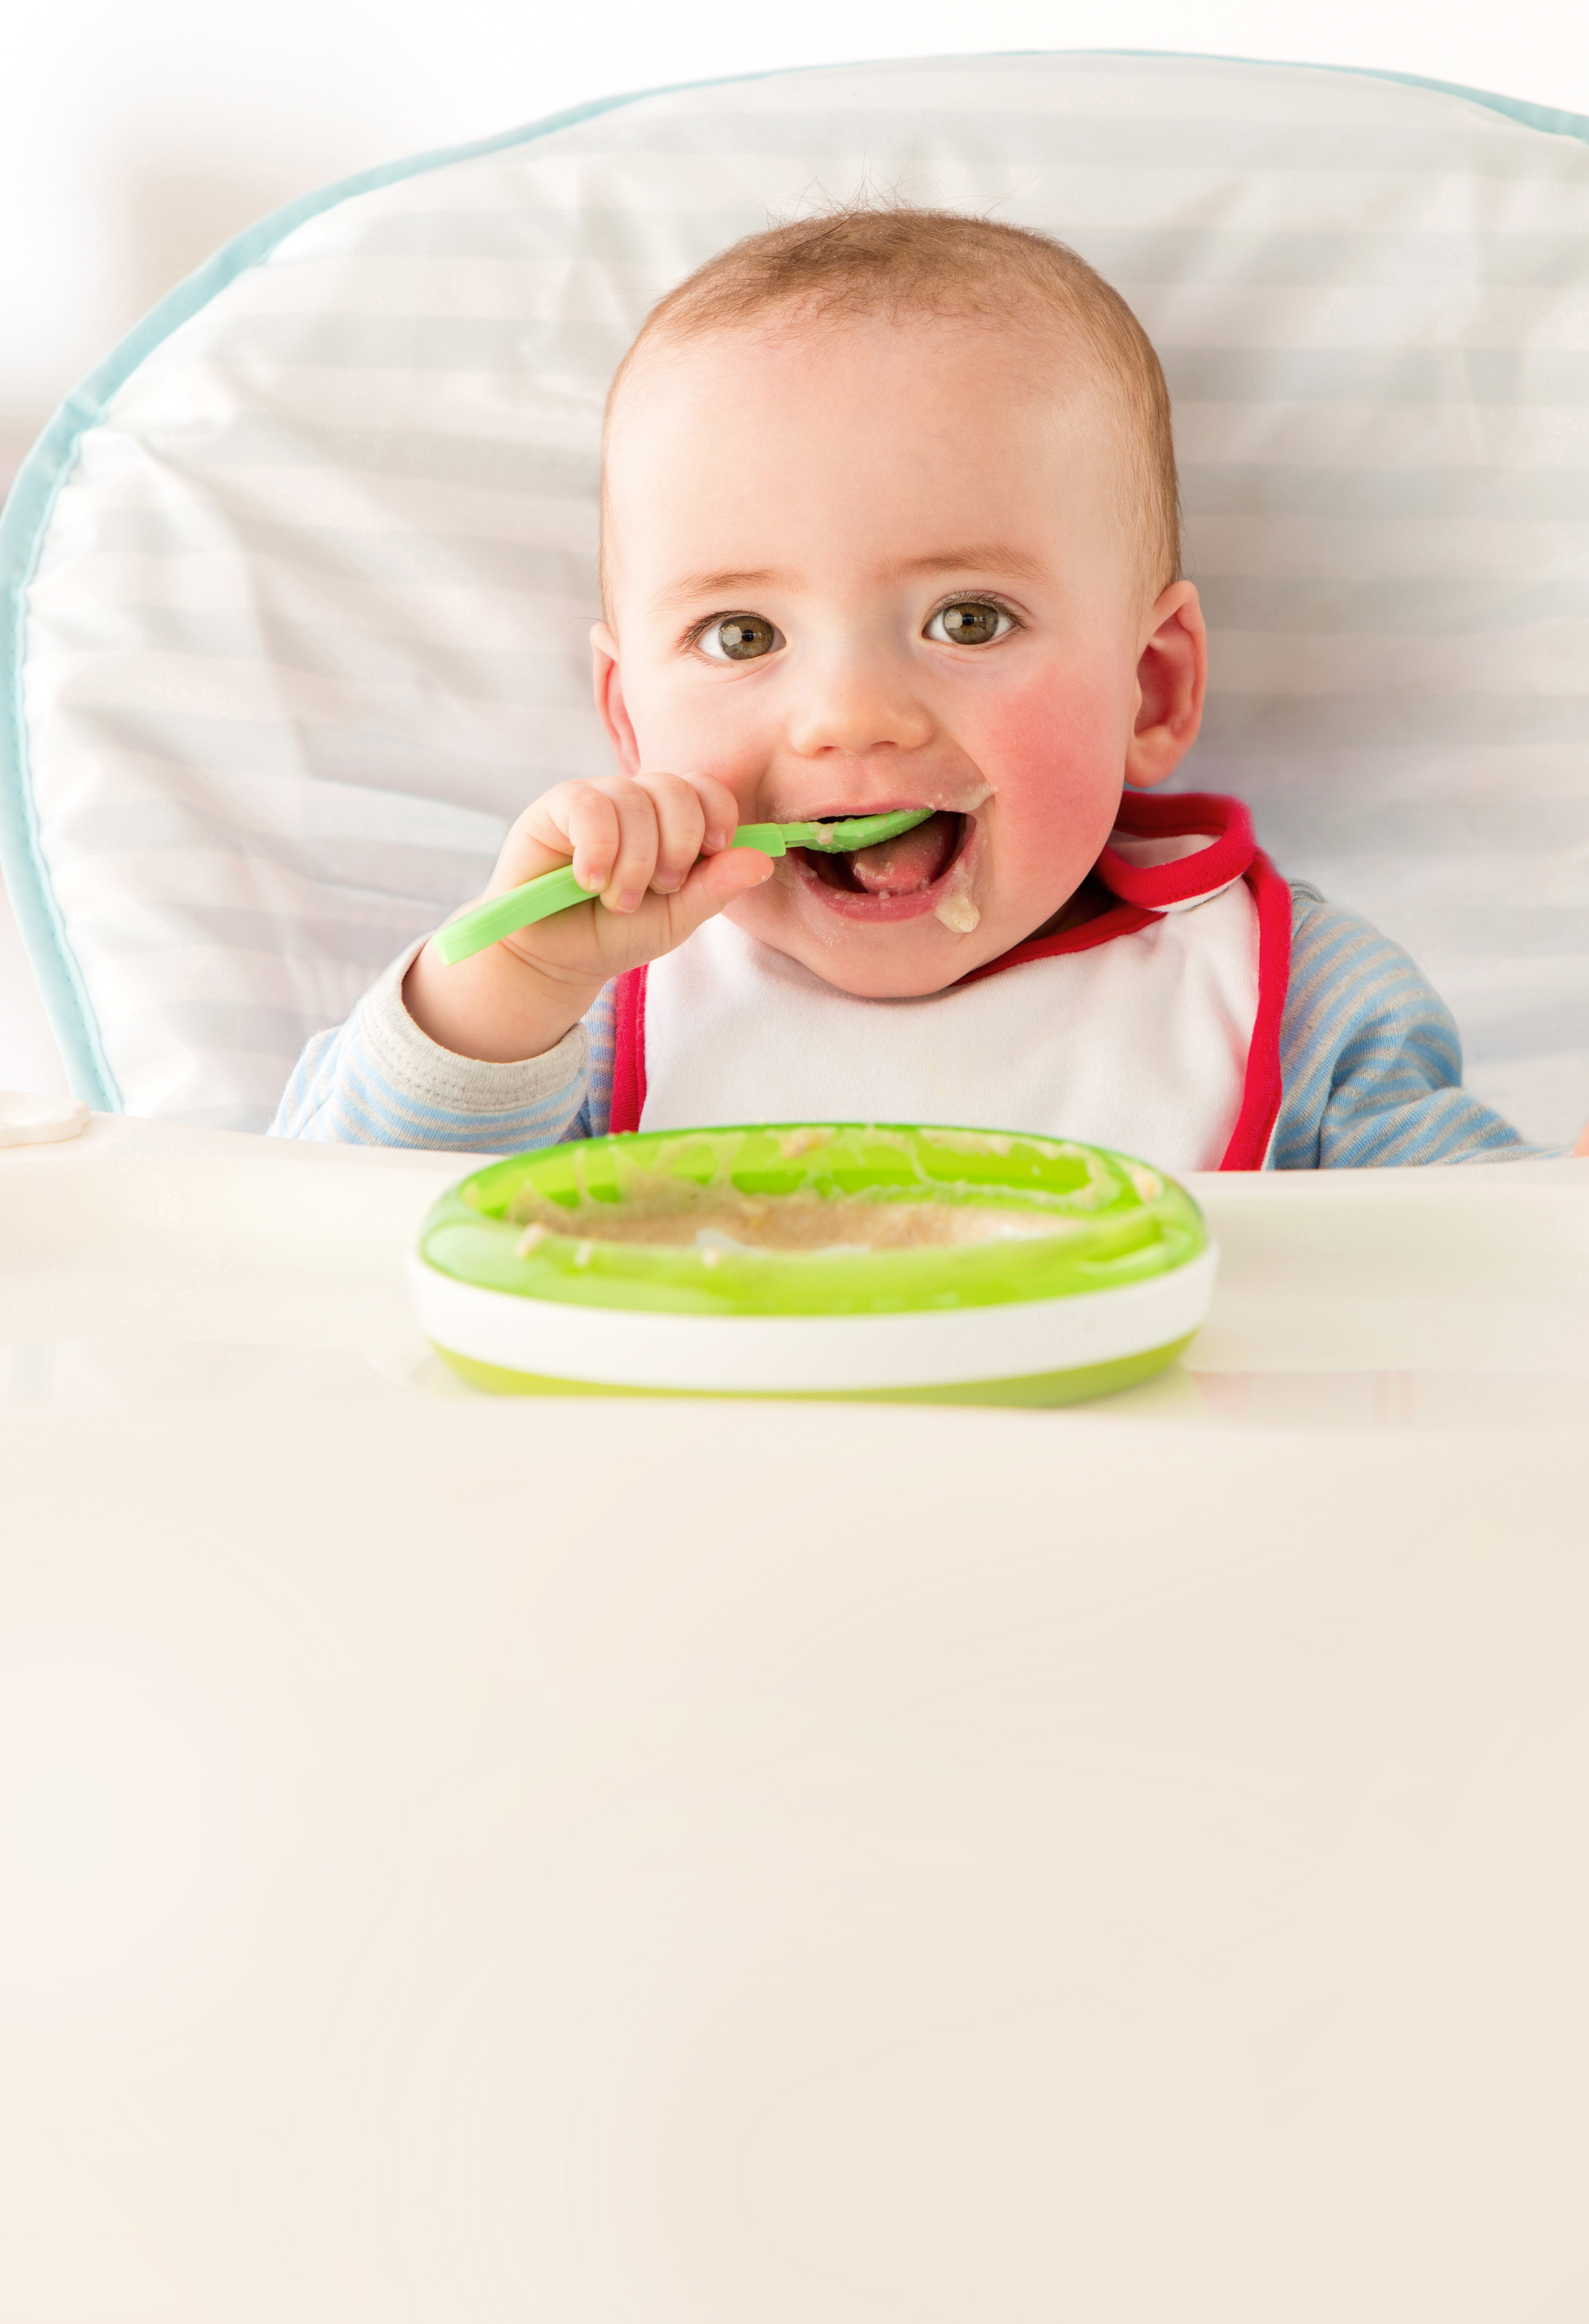 Immer mehr Babys reagieren schon früh mit Allergien oder Unverträglichkeiten auf Lebensmittel. Mein Baby verträgt seinen Brei nicht: Was ist die Ursache?